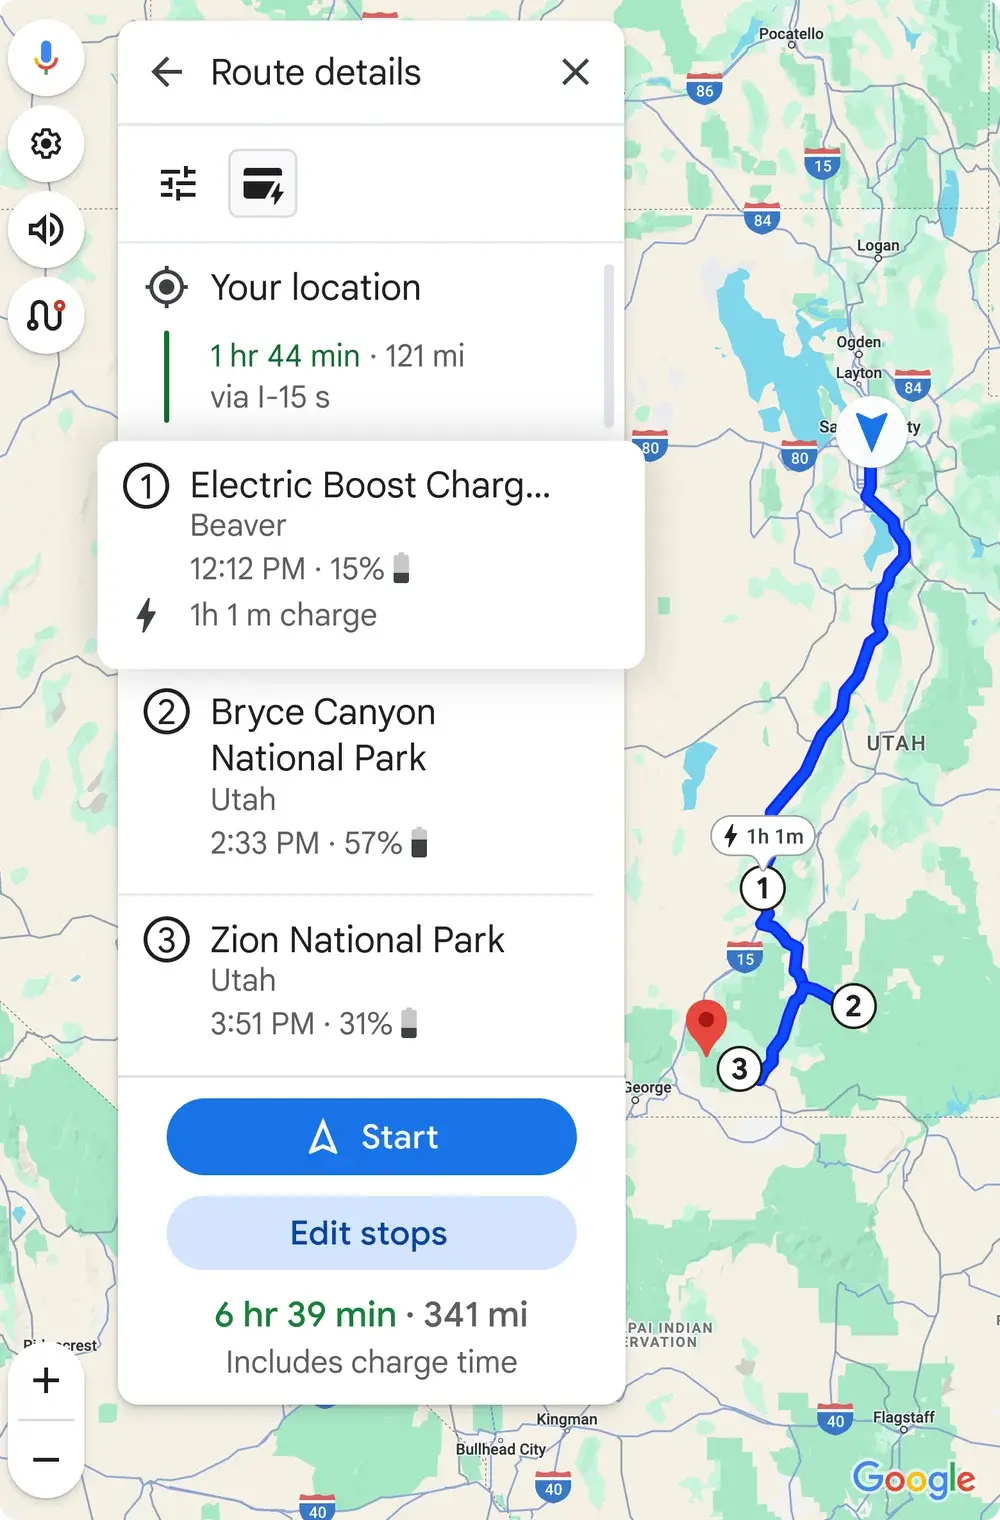 (Fonte da imagem - Google) Viagens com várias paradas - o Google Maps fornecerá instruções detalhadas para estações de carregamento de veículos elétricos e mais informações para os motoristas